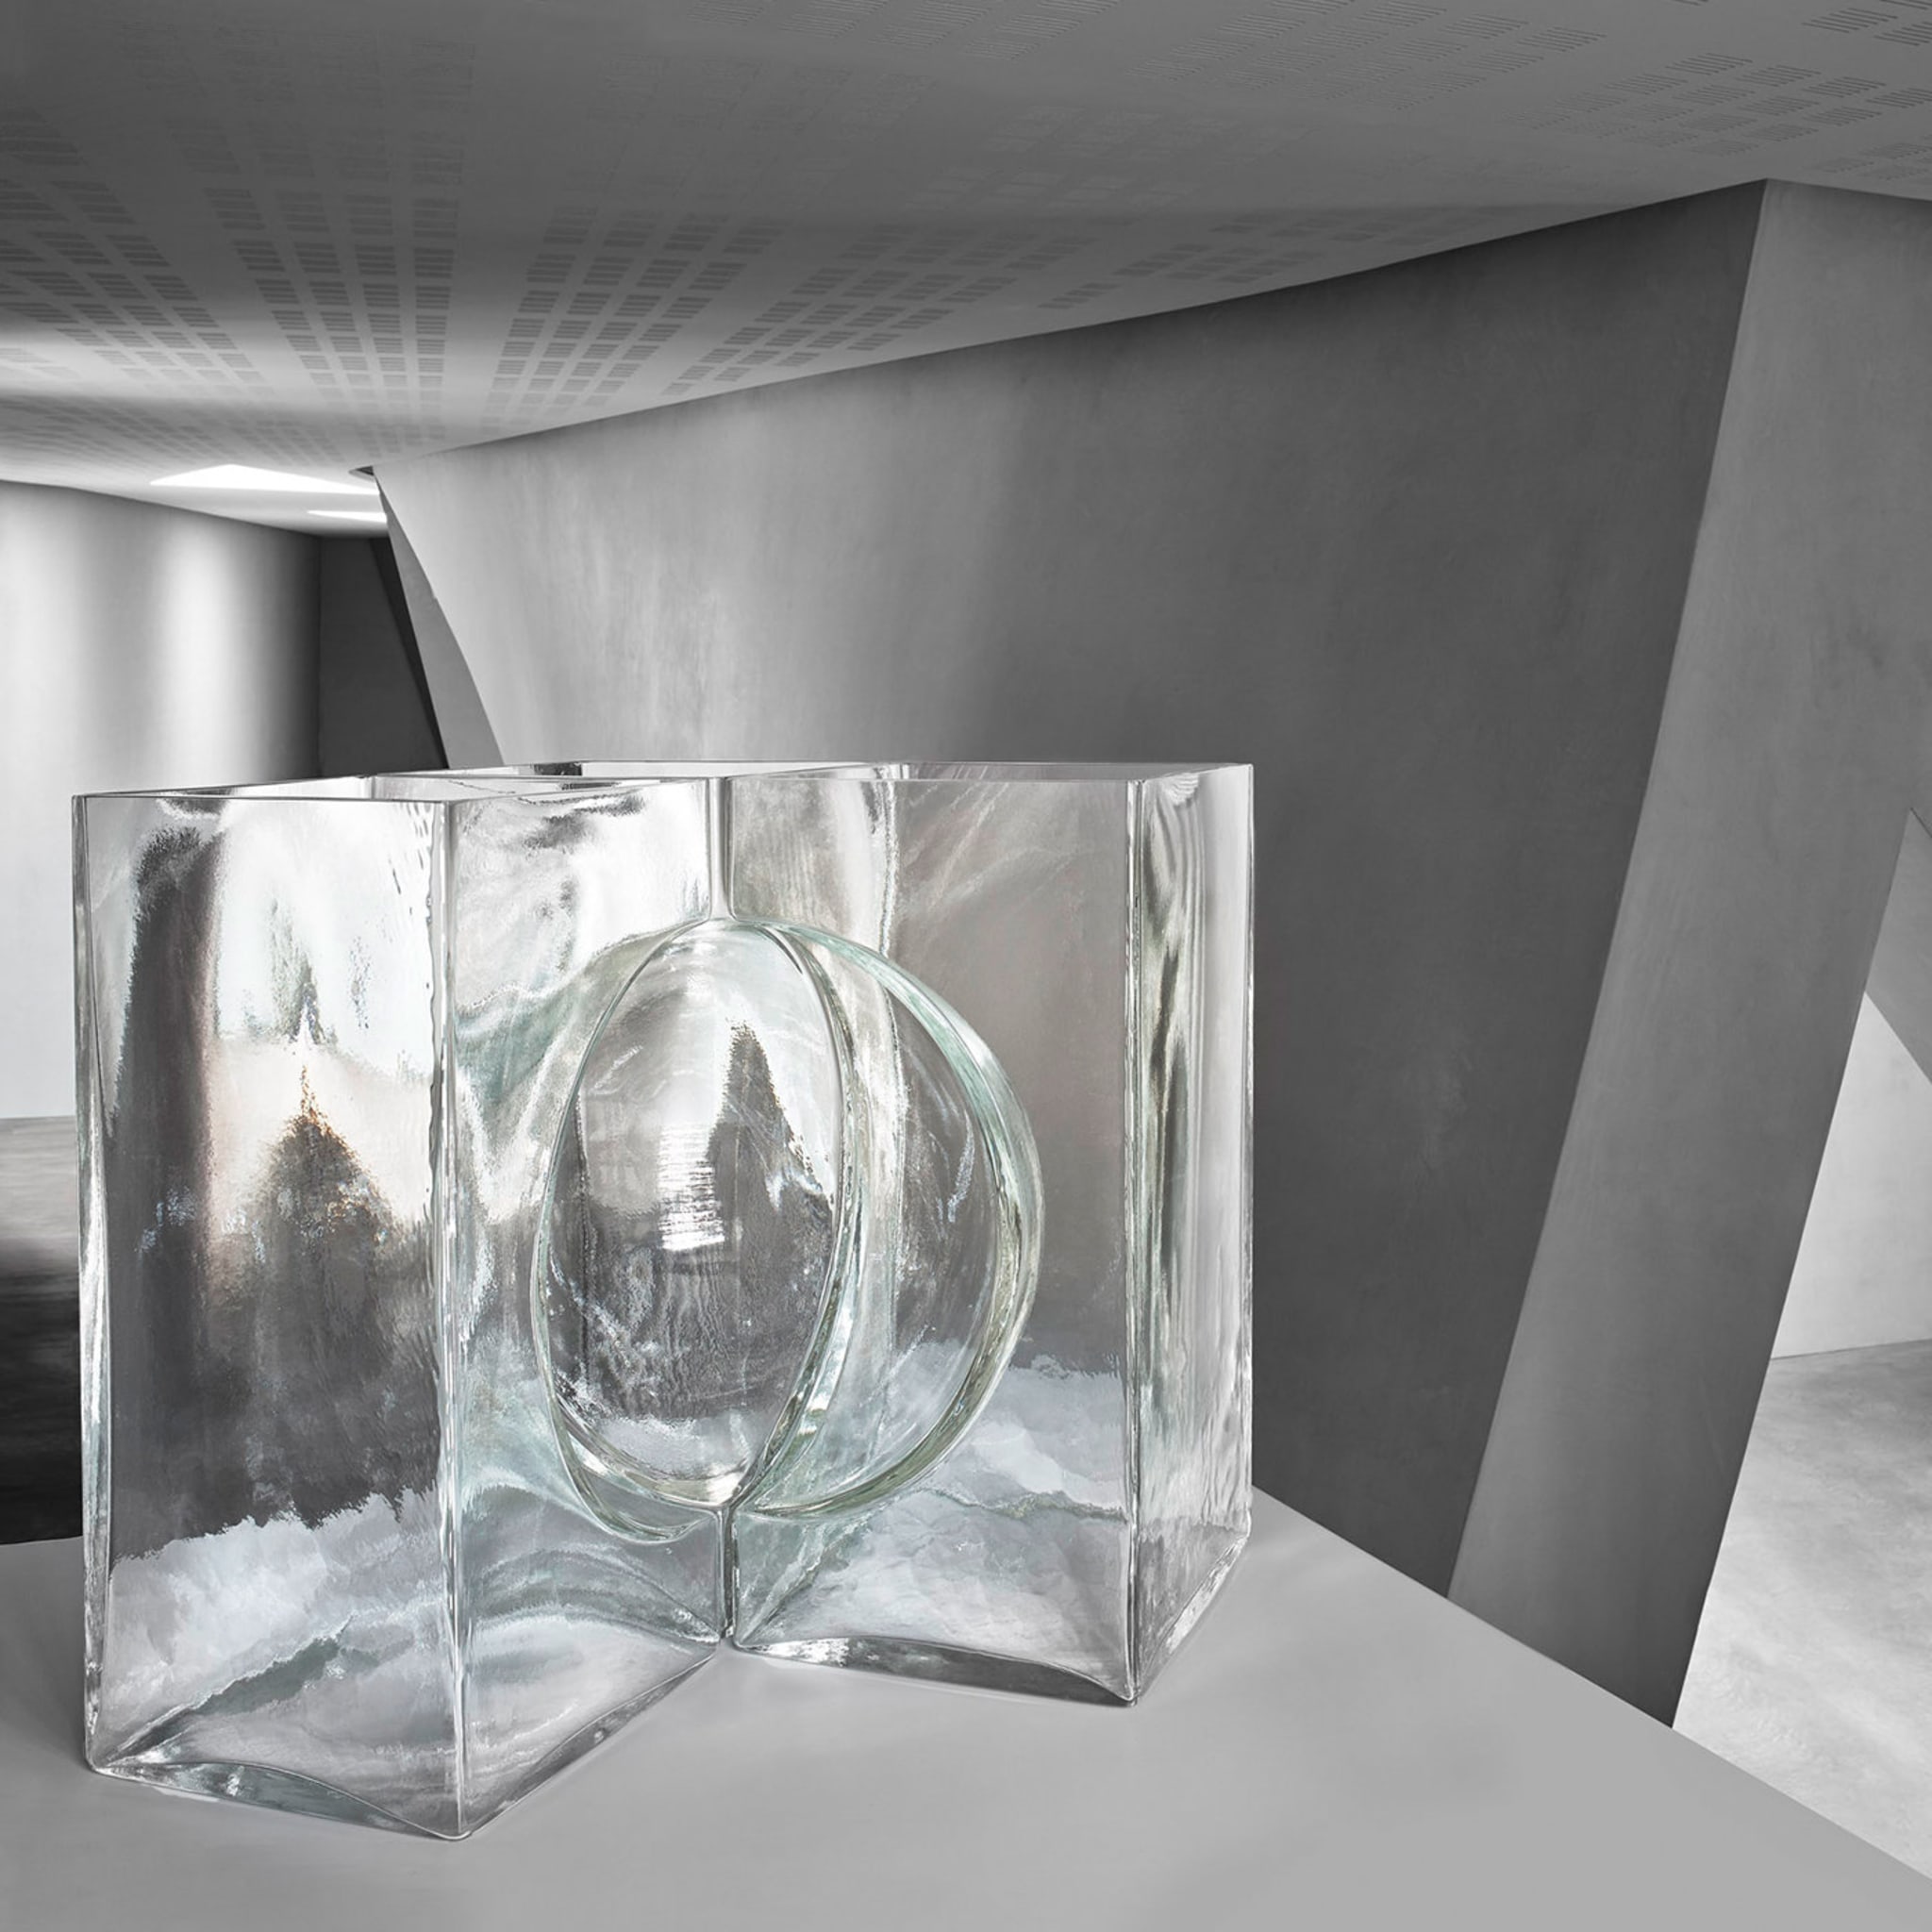 Ando Cosmos Crystal Sculpture by Tadao Ando - Alternative view 1